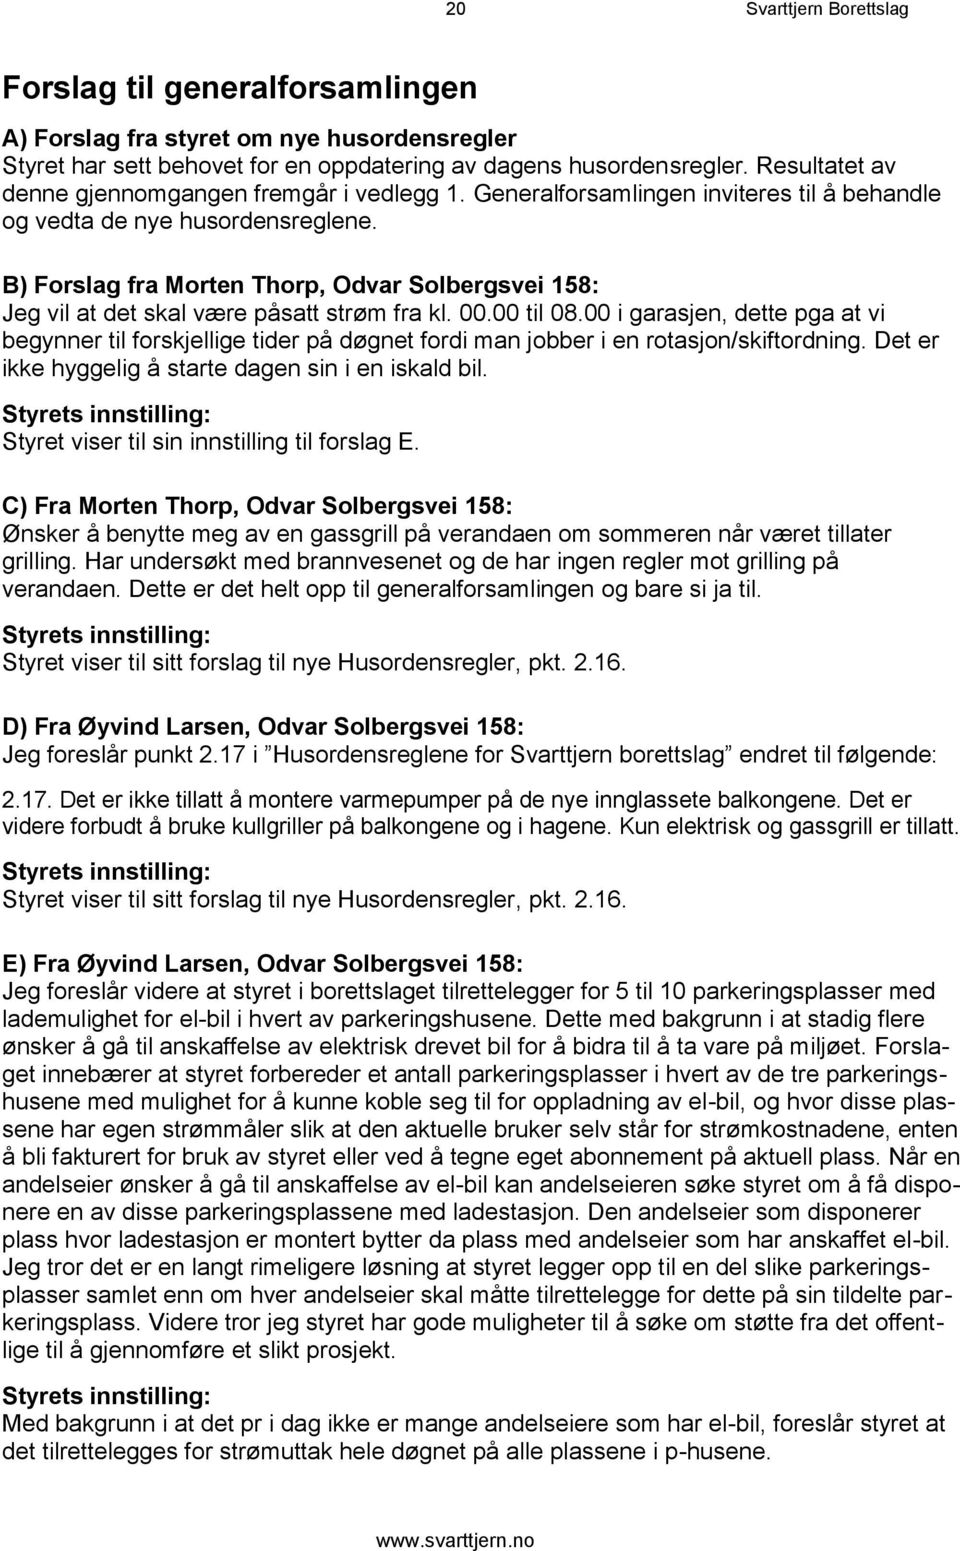 B) Forslag fra Morten Thorp, Odvar Solbergsvei 158: Jeg vil at det skal være påsatt strøm fra kl. 00.00 til 08.